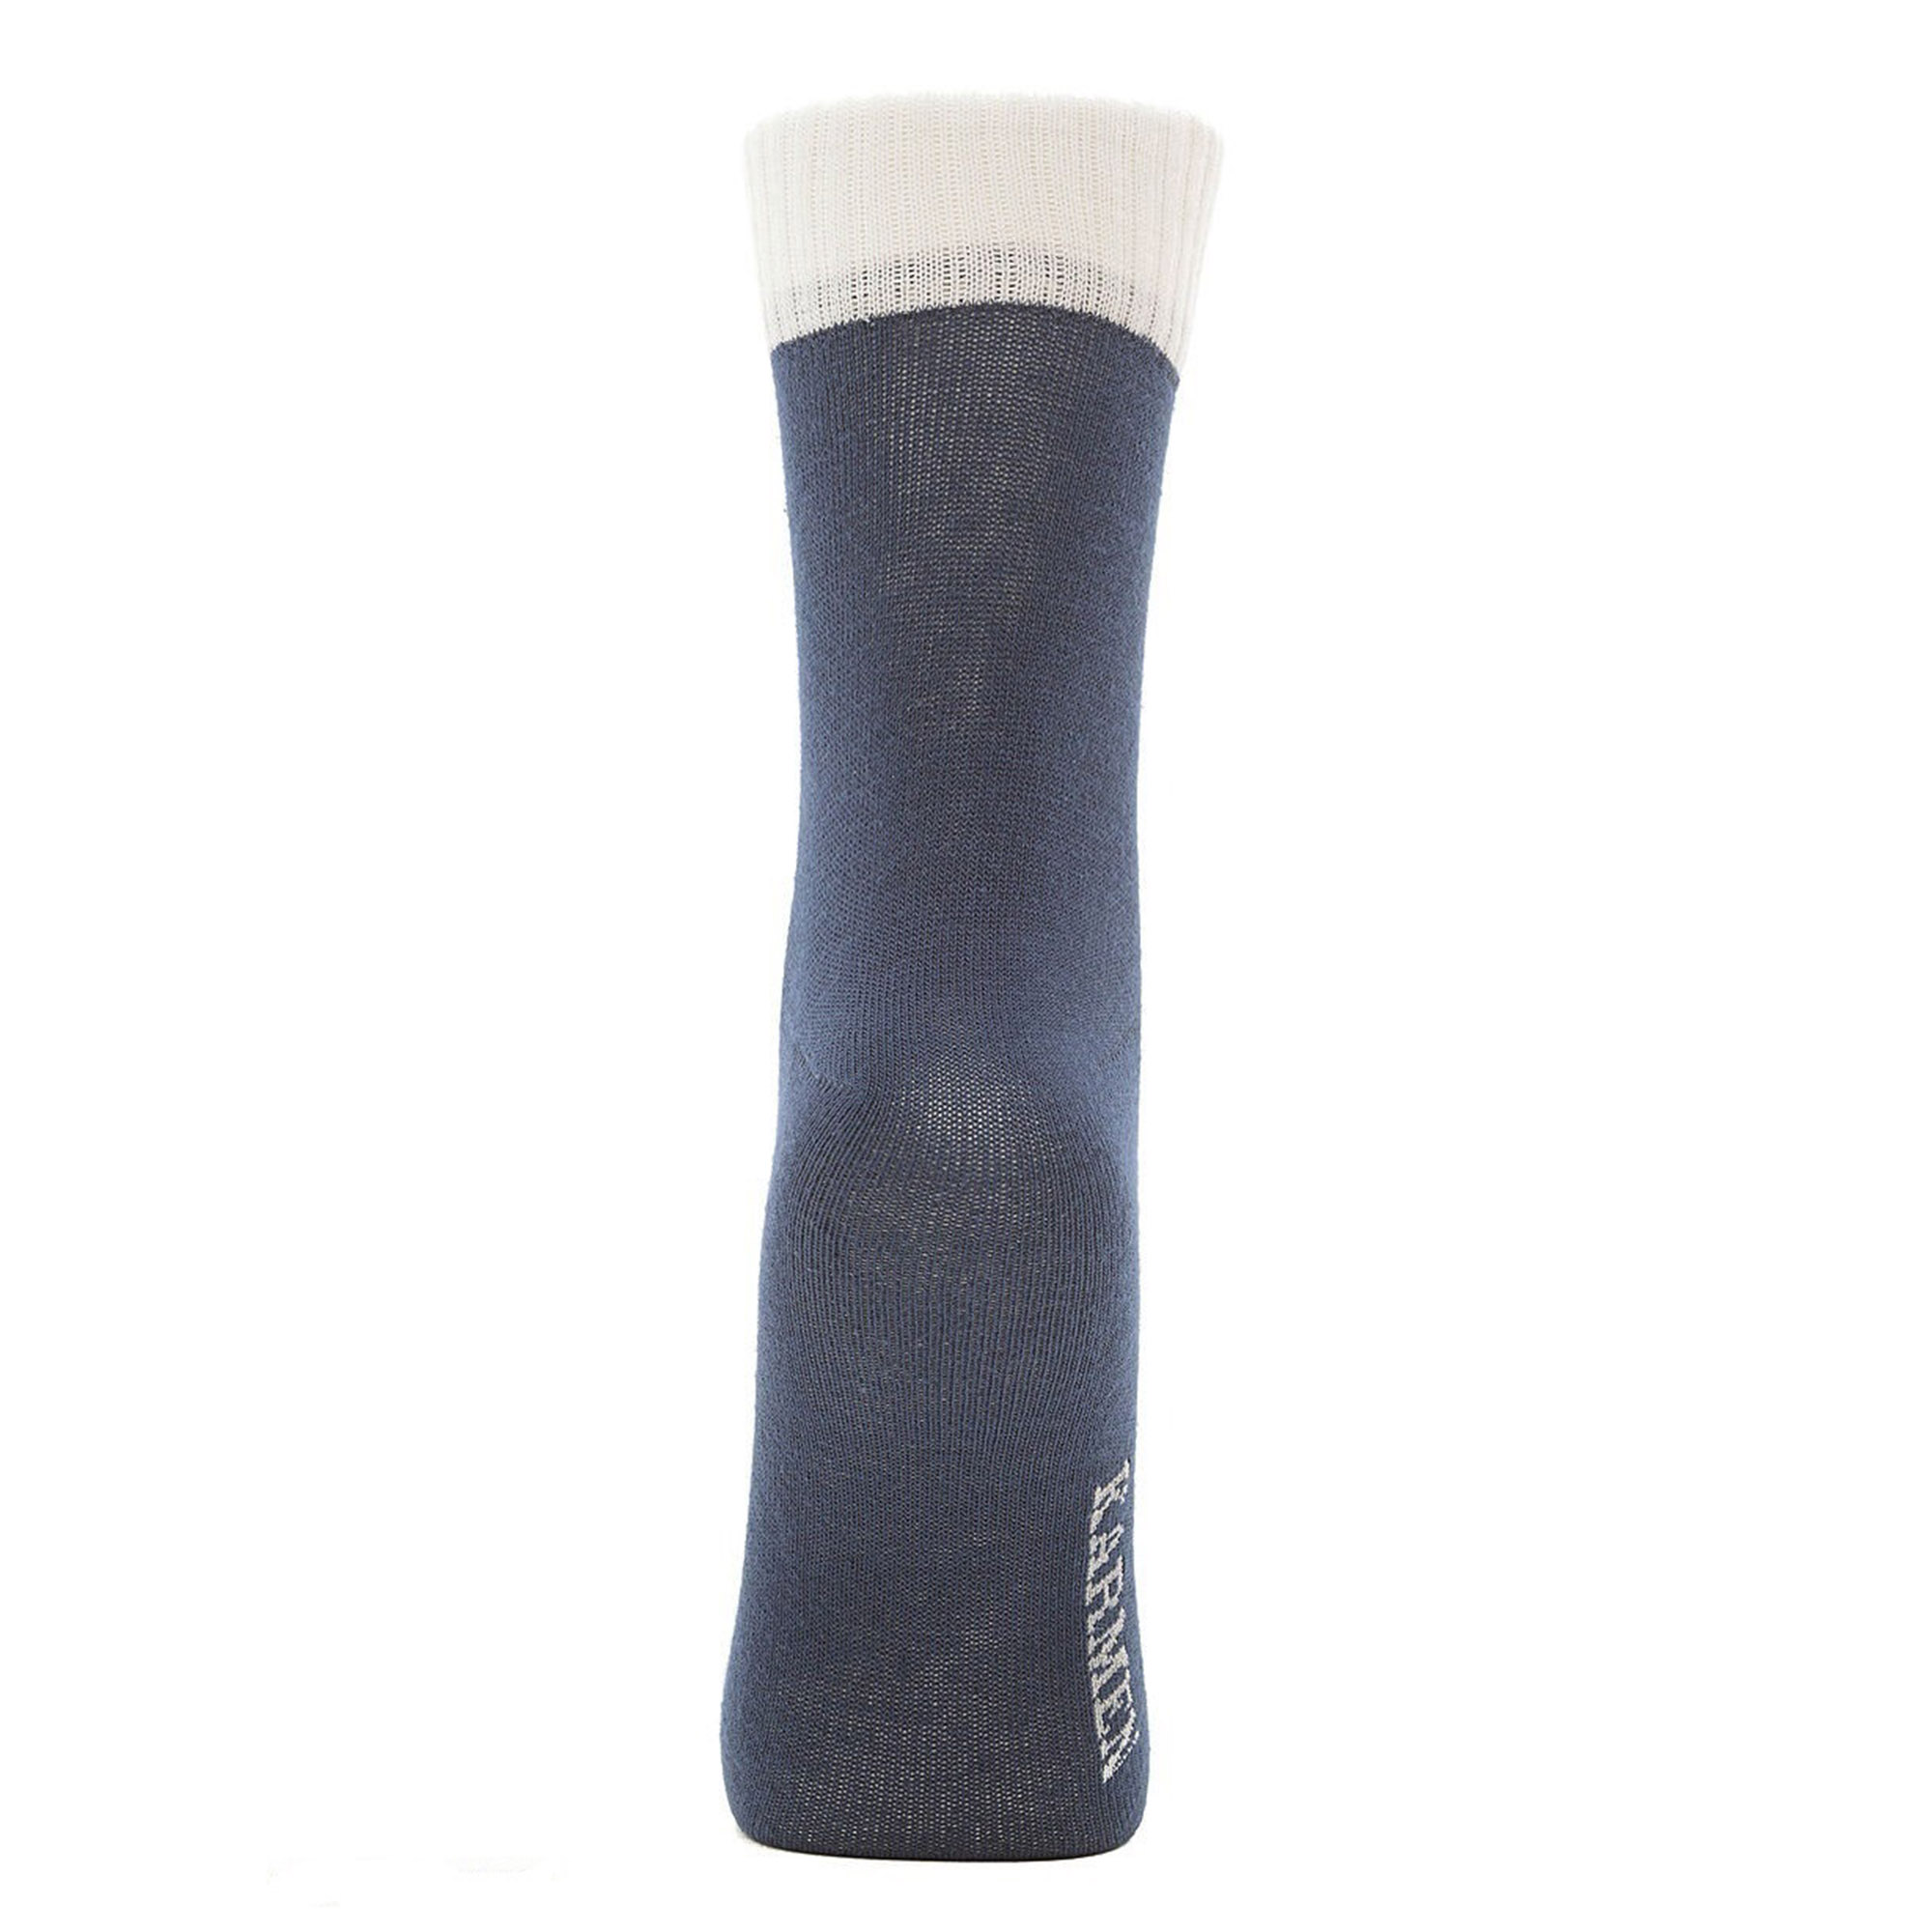 Носки Karmen Calza Look blu S 35-37, цвет синий, размер 35-37 - фото 2